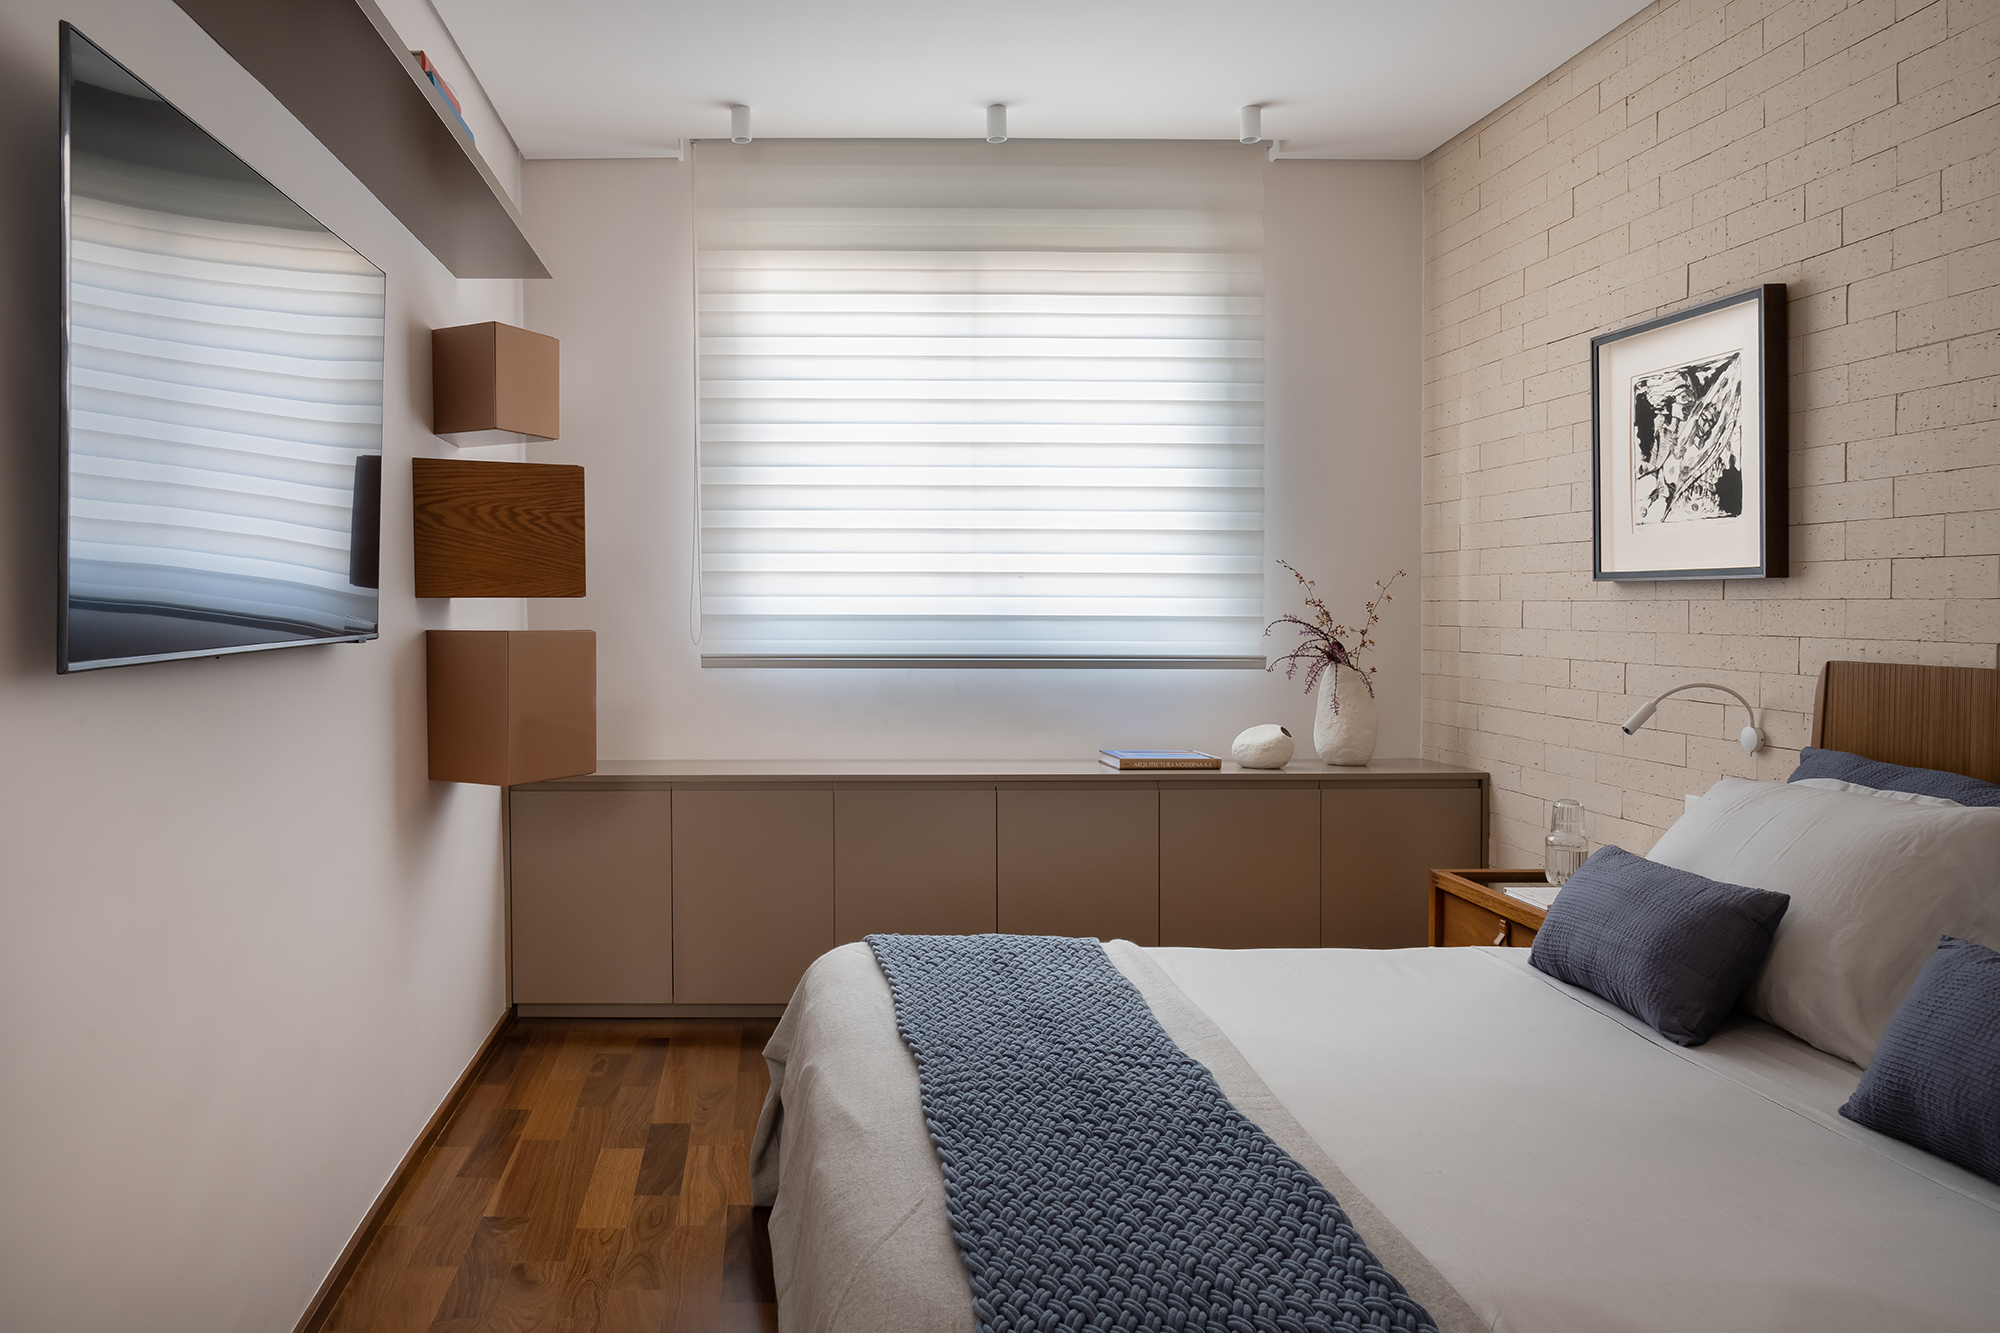 Apartamento de 188 m² ganha dois cooktops na cozinha e balanços na sala, Projeto Raízes Arquitetos. Na foto, quarto de casal com parede de tijolinhos.